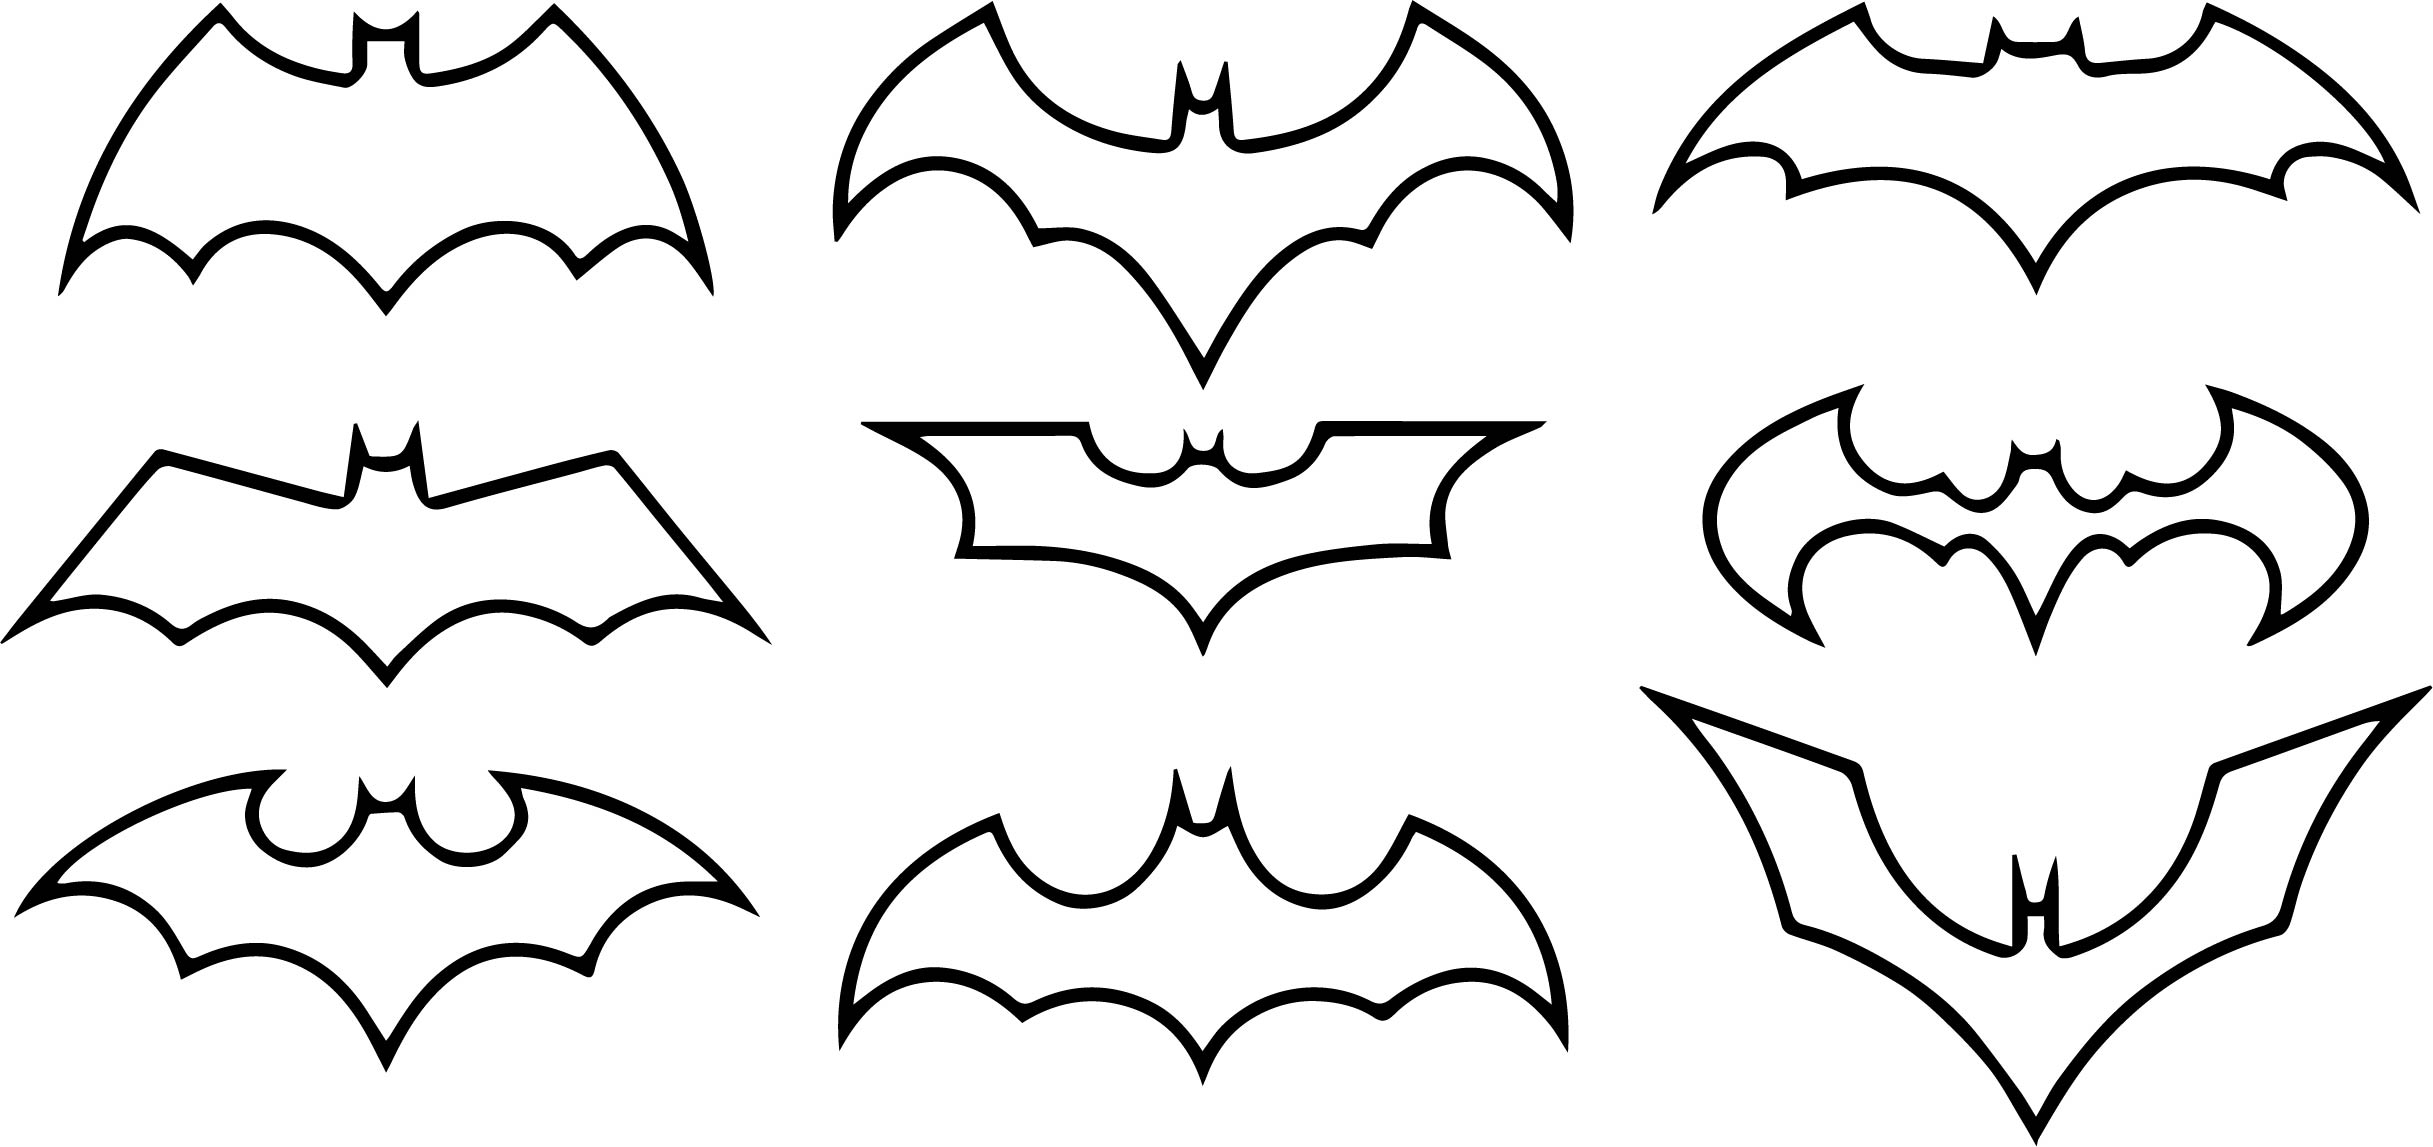 500 Batman Logo Wallpapers HD Images Vectors Free Download